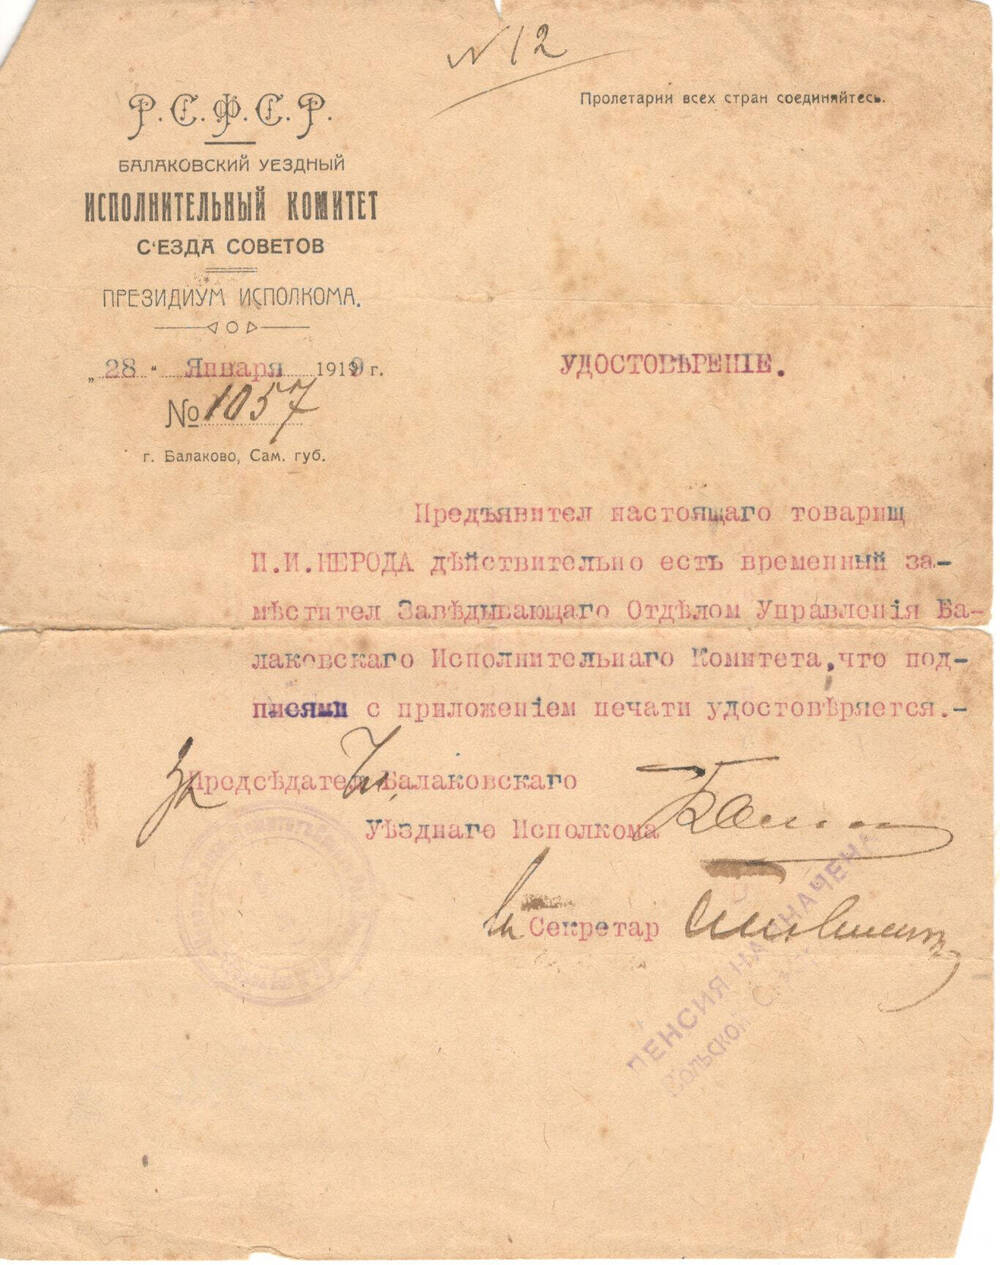 Удостоверение Нероды Ивана Ивановича № 1057 от 28 января 1919 года.